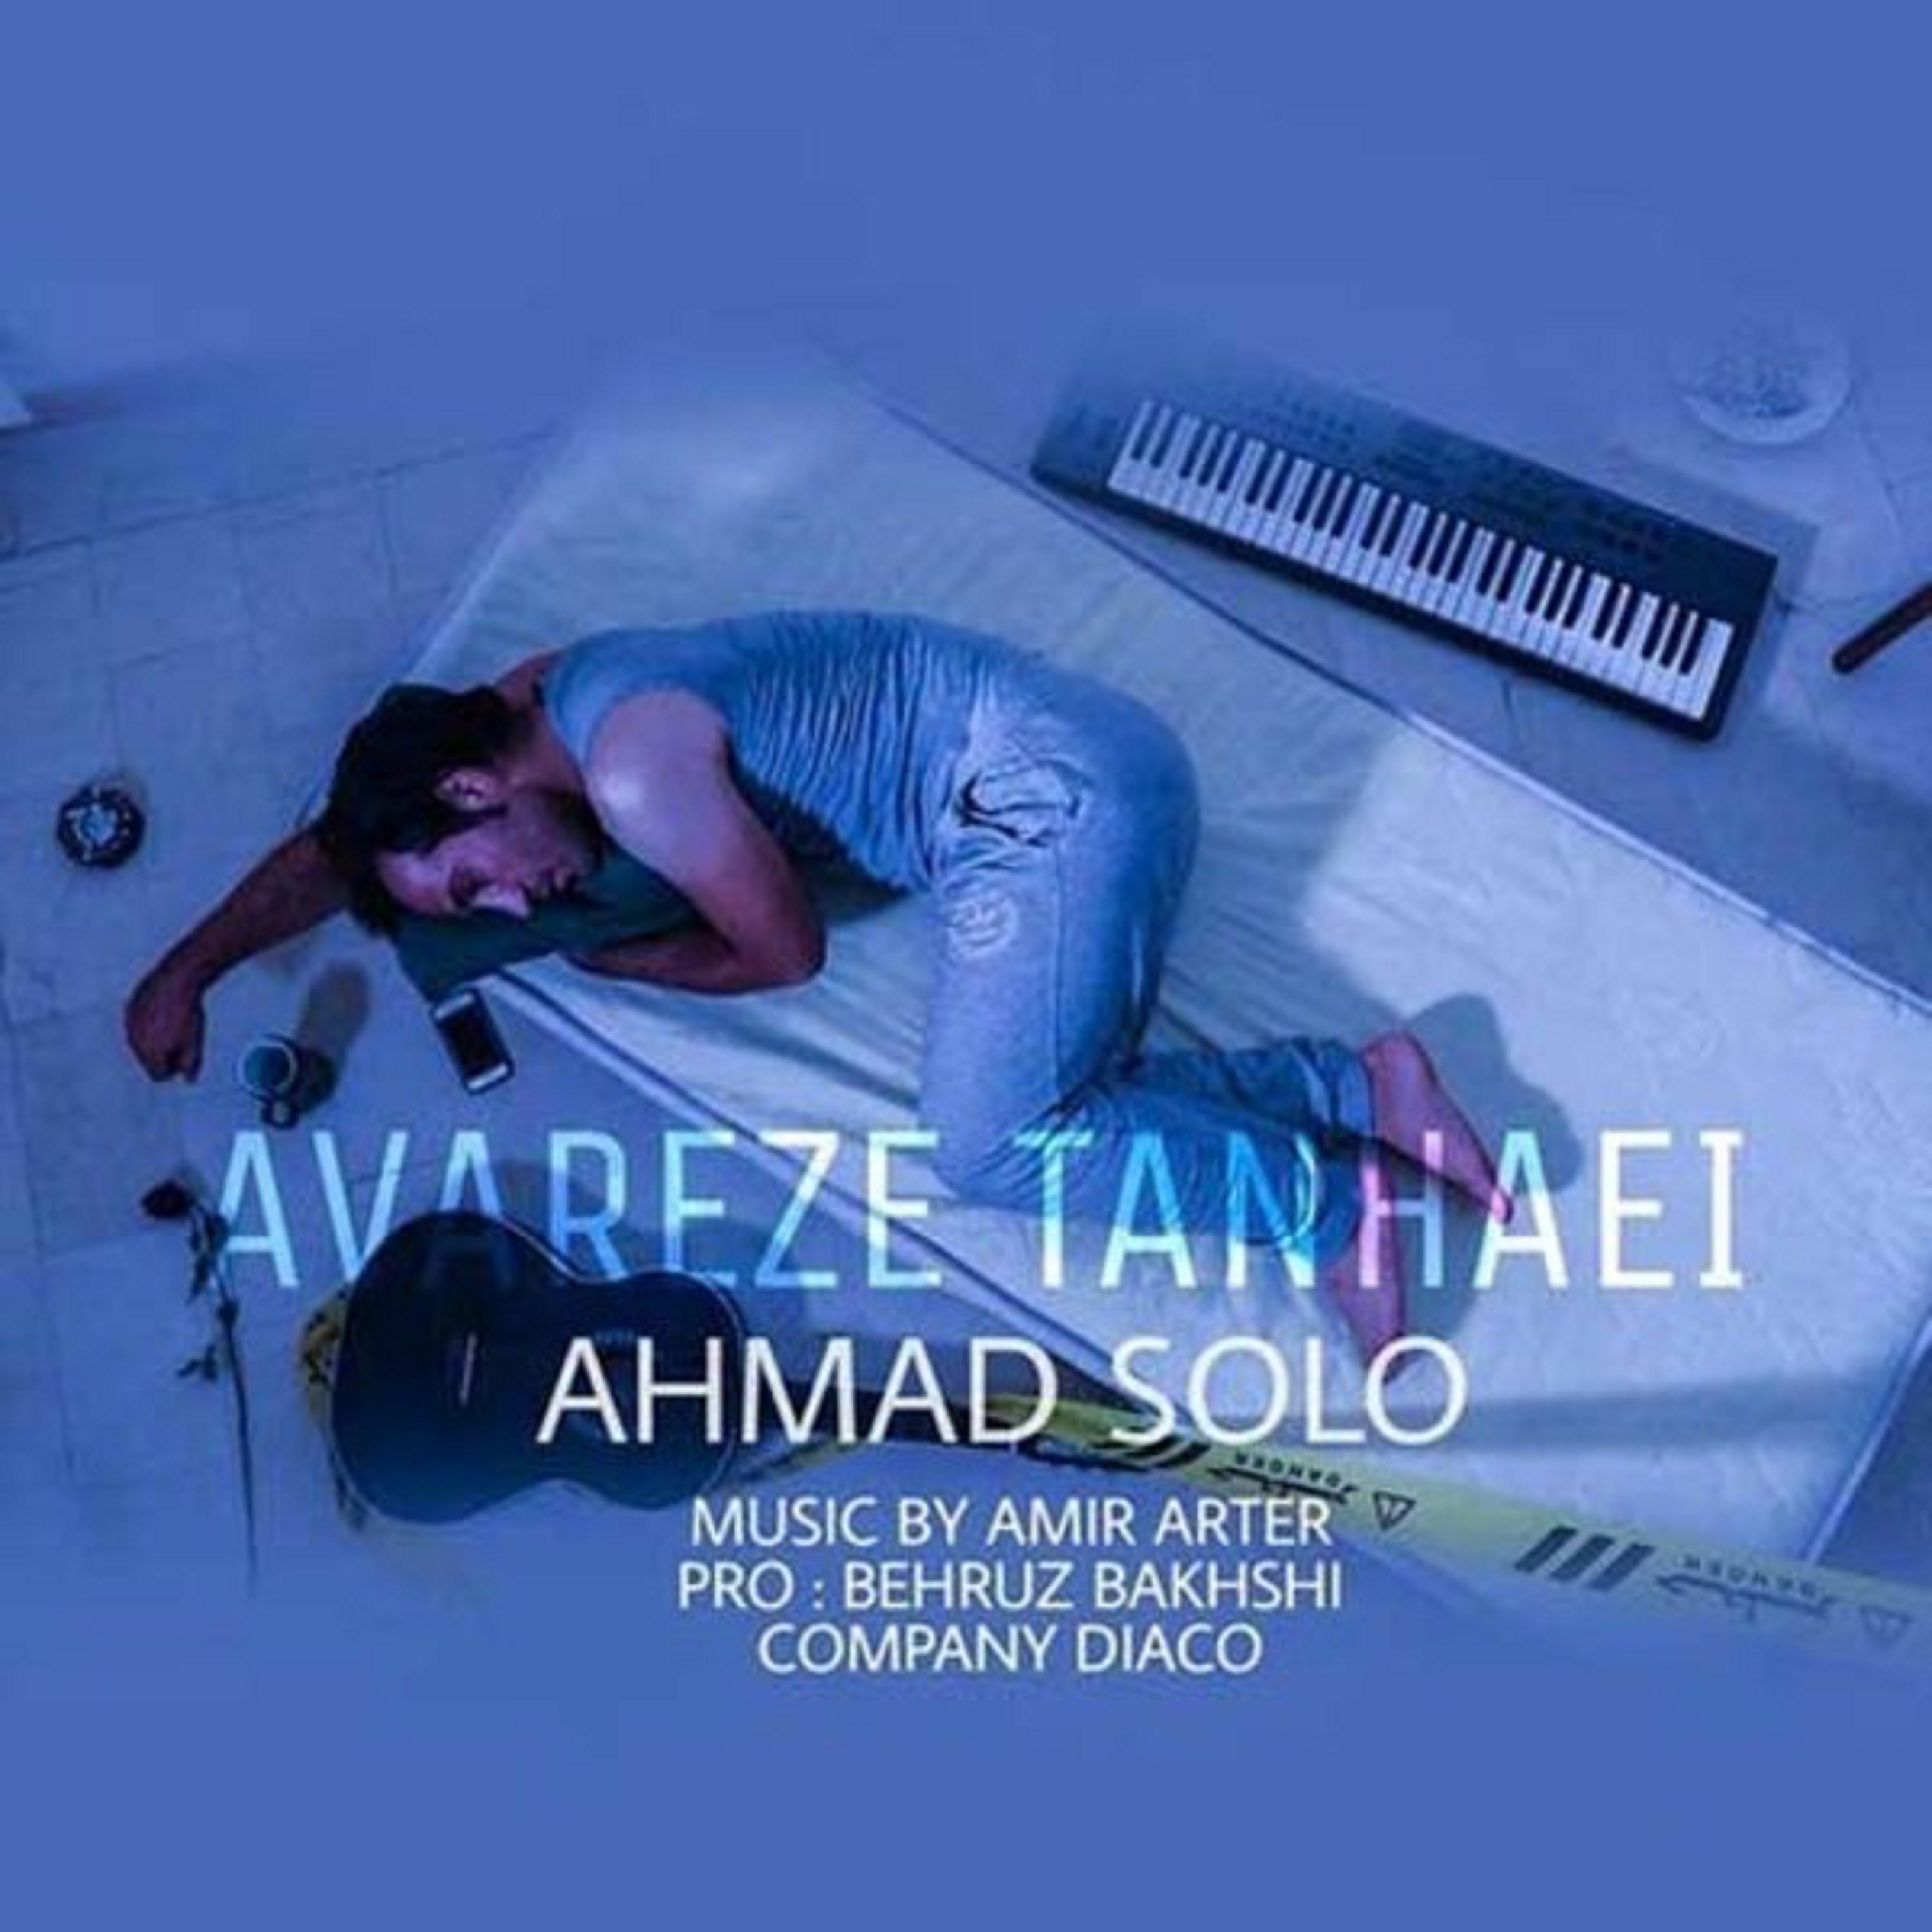  دانلود آهنگ جدید احمد سولو - عوارض تنهایی | Download New Music By Ahmad Solo - Avareze Tanhaei